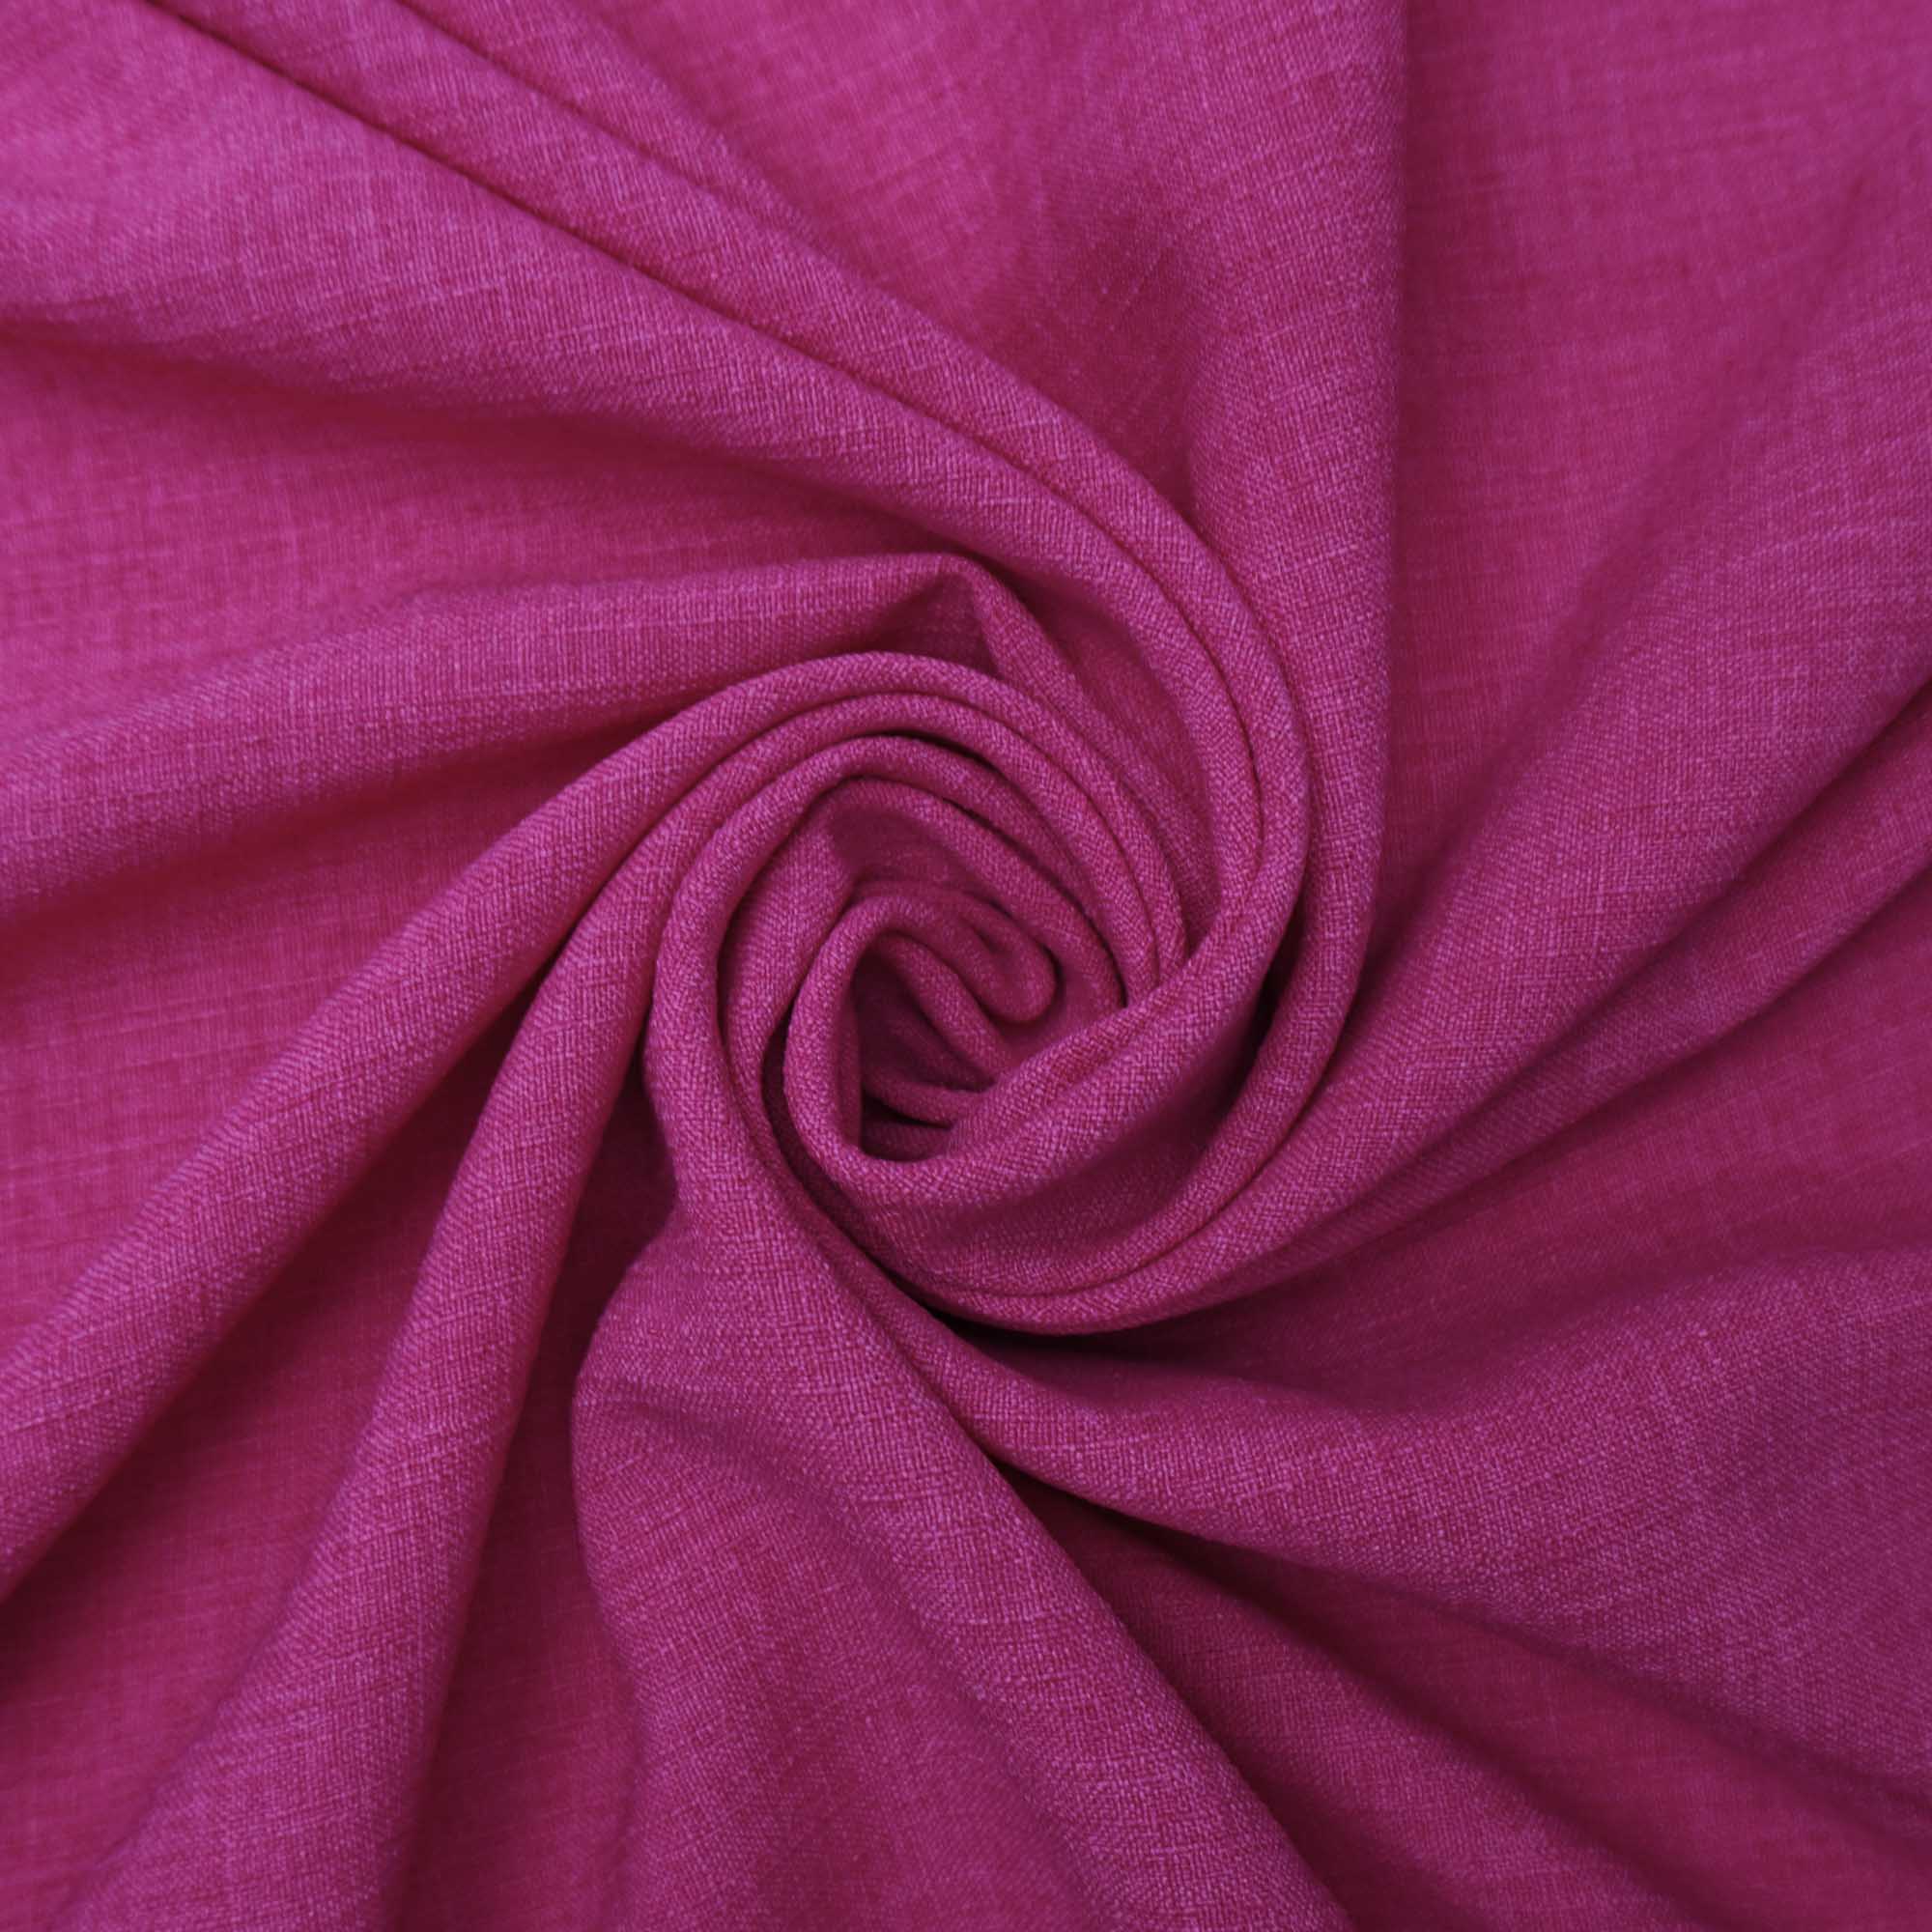 Tecido poliester com textura de linho pink